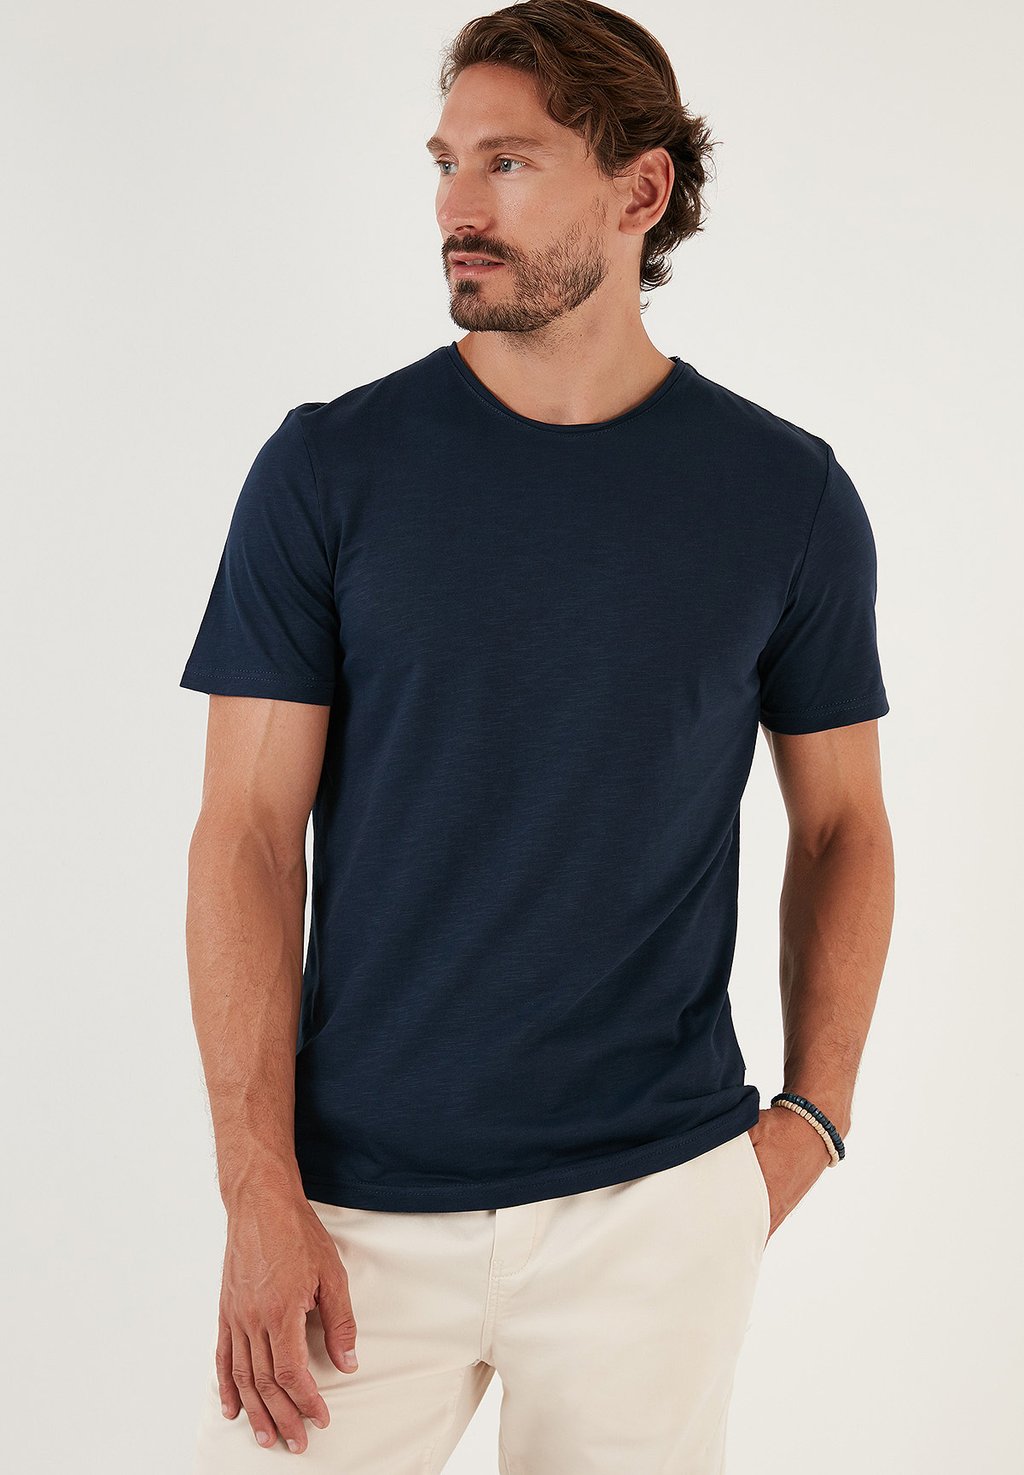 Базовая футболка SLIM FIT Buratti, Королевский синий рубашка buratti королевский синий